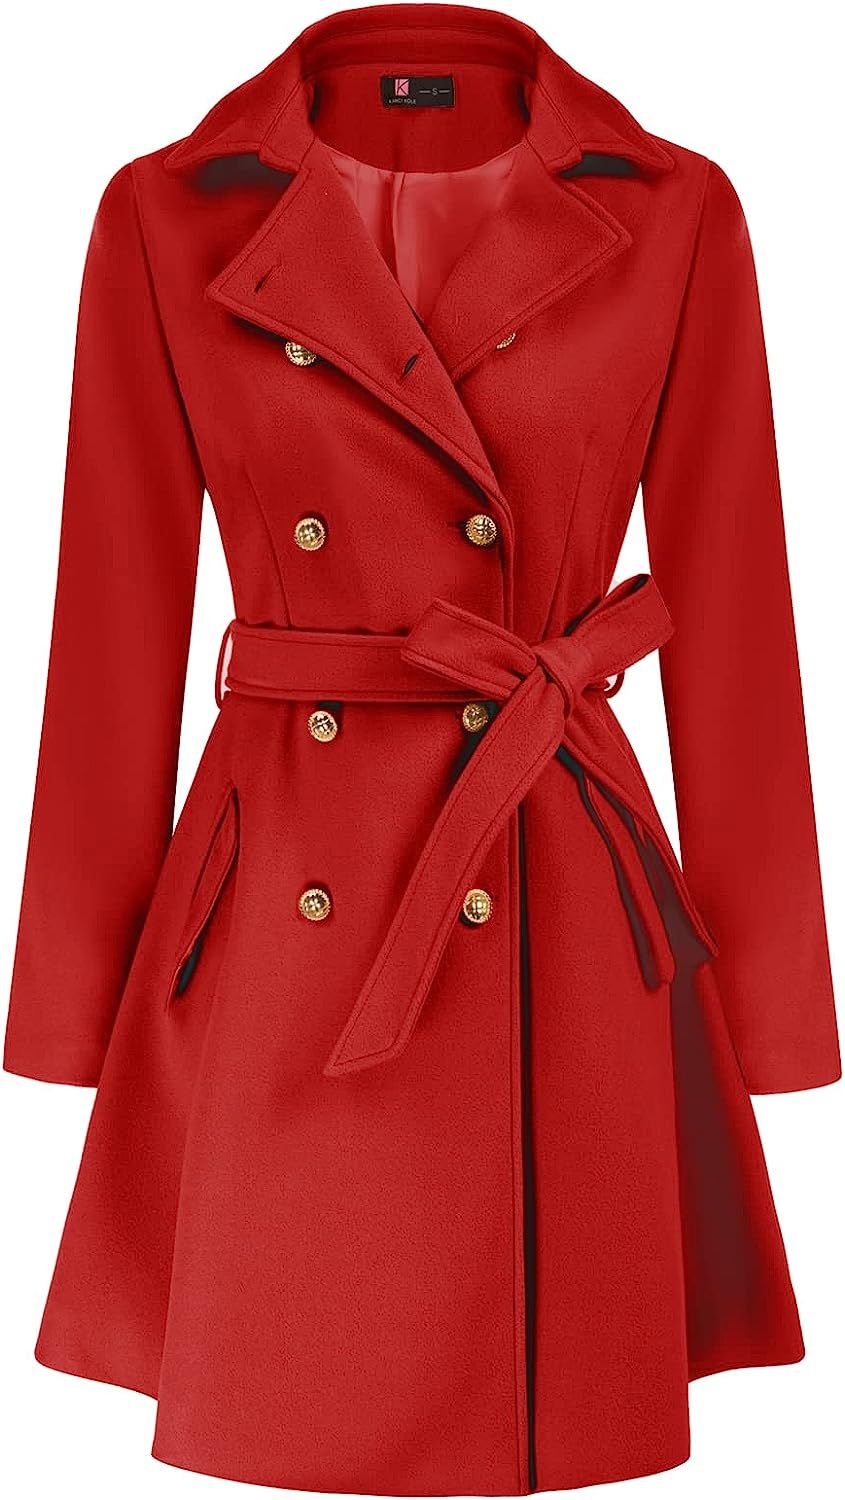 KANCY KOLE Women's A-Line Pea Coat Notch Lapel Double Breasted Classic Jacket Outwear | Amazon (US)